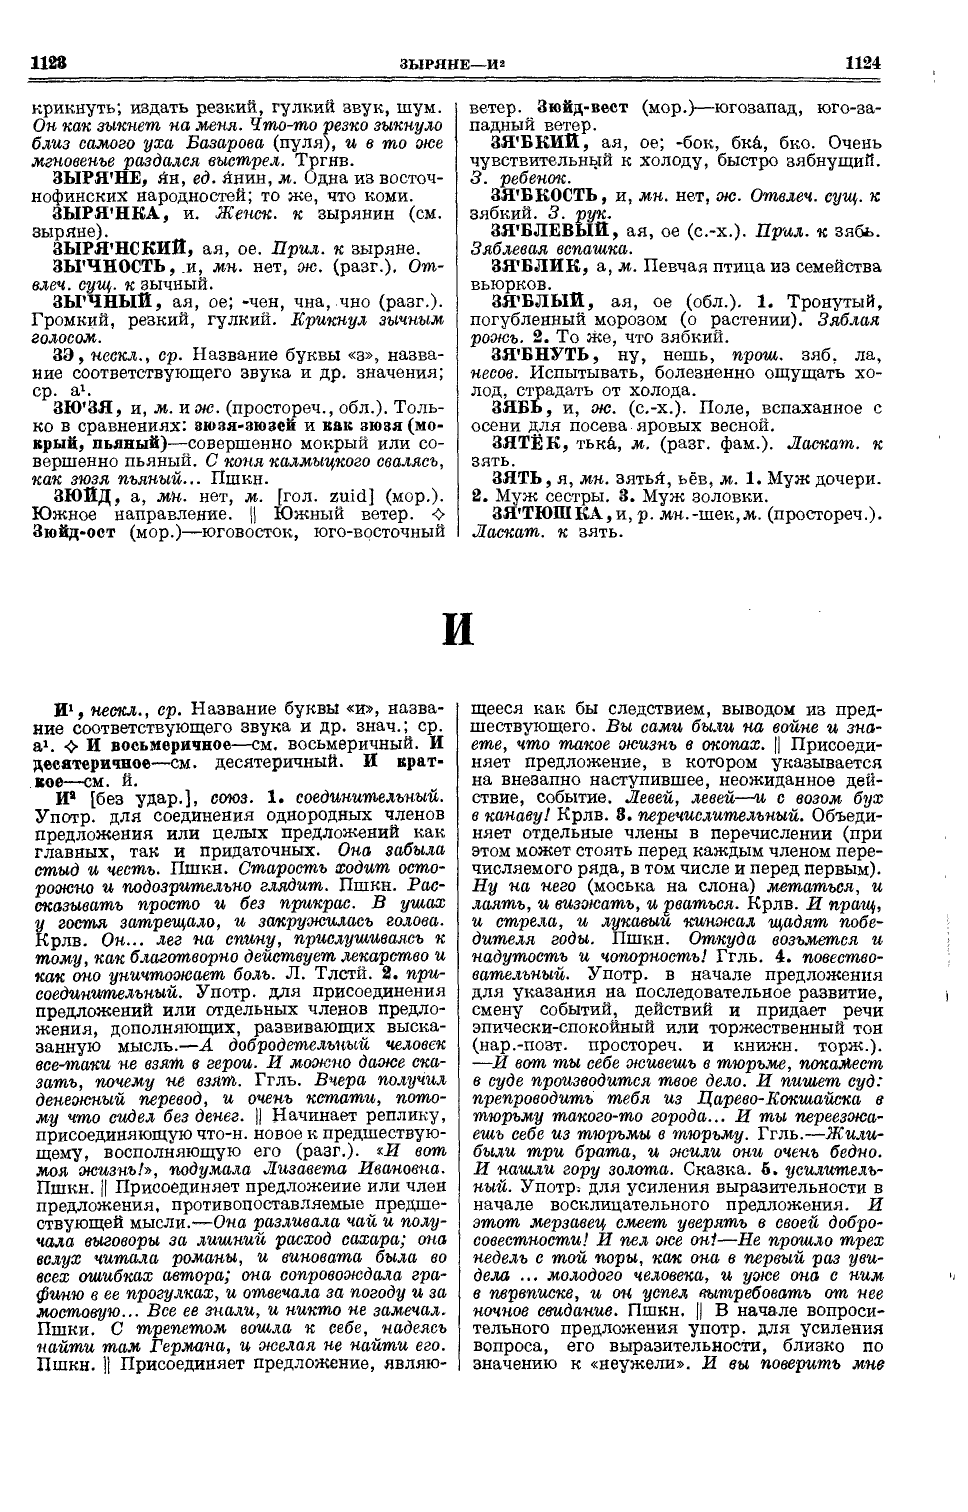 Фотокопия pdf / скан страницы 600 толкового словаря Ушакова (том 1)